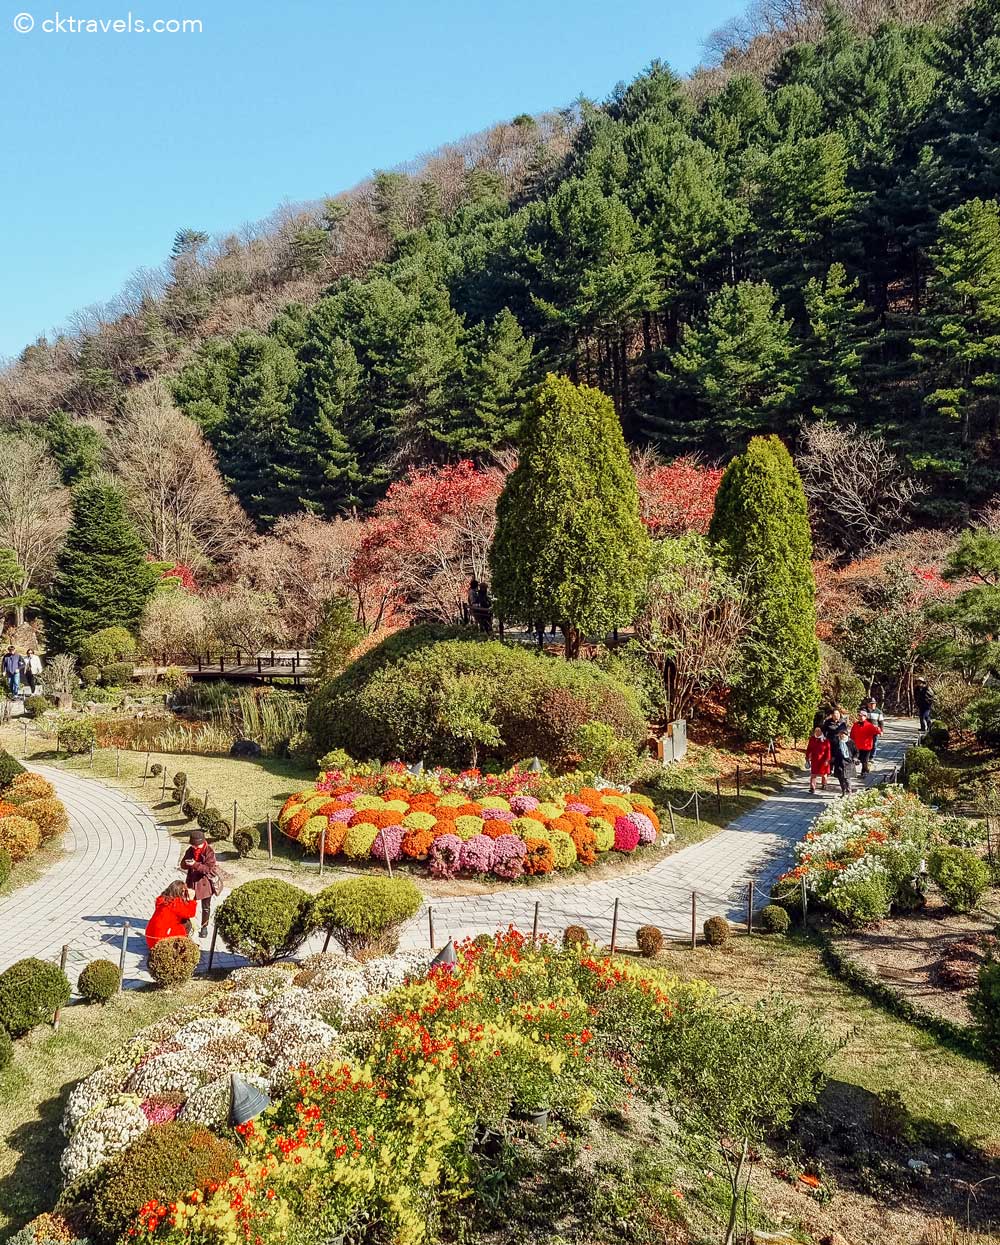 The Sunken Garden. The Garden of Morning Calm near Seoul, South Korea